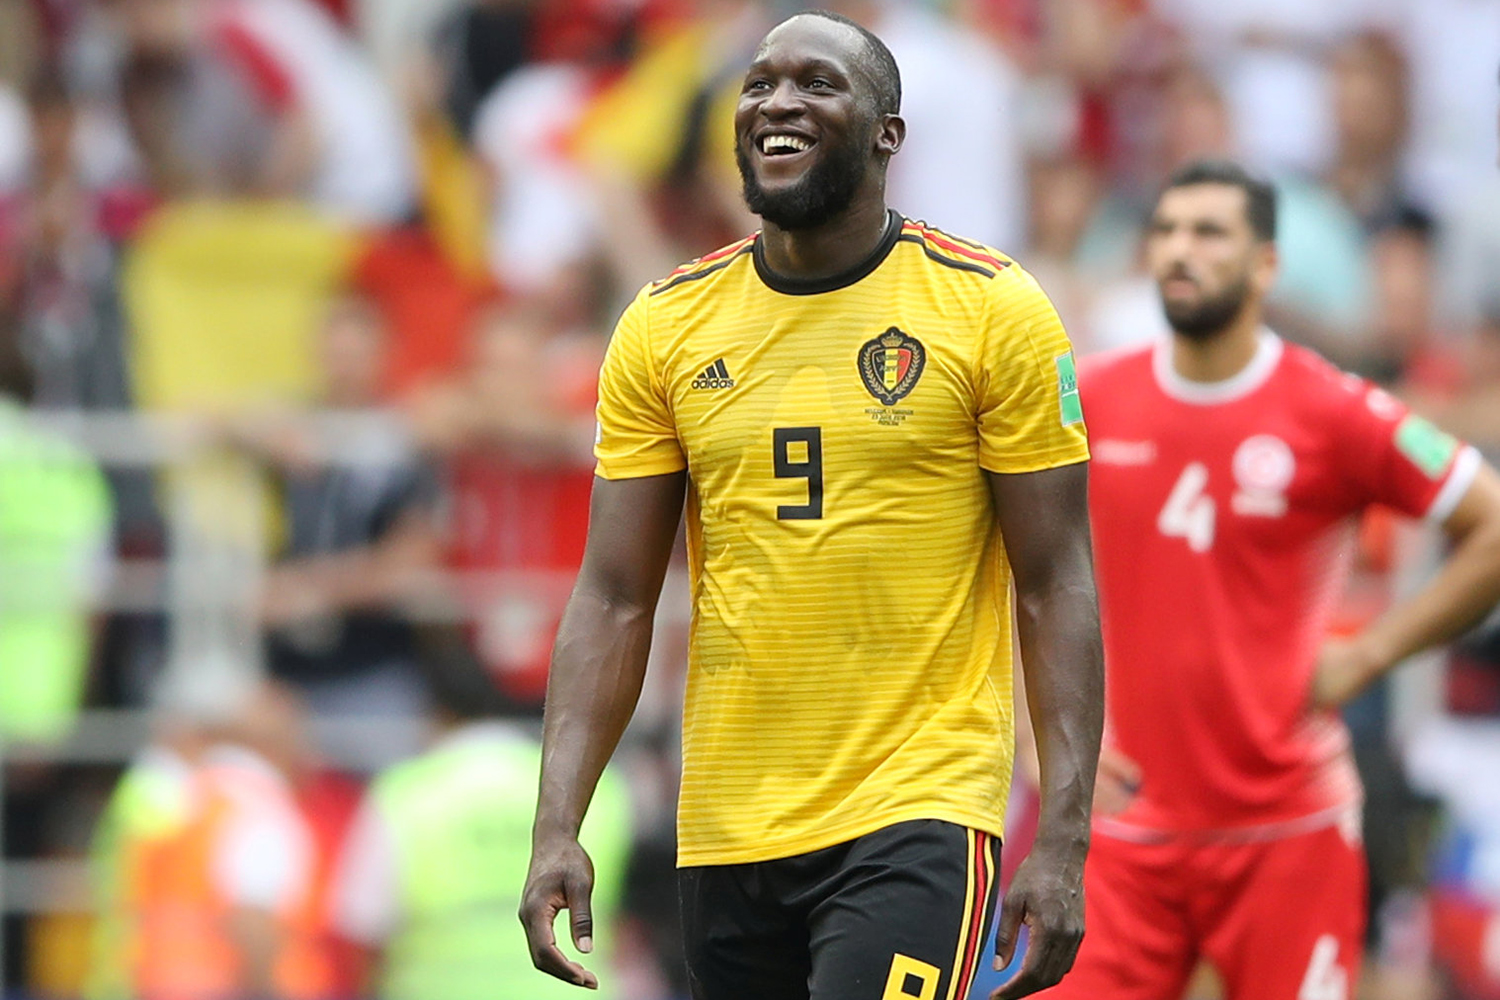 Bélgica vence com a fome de gols de Lukaku